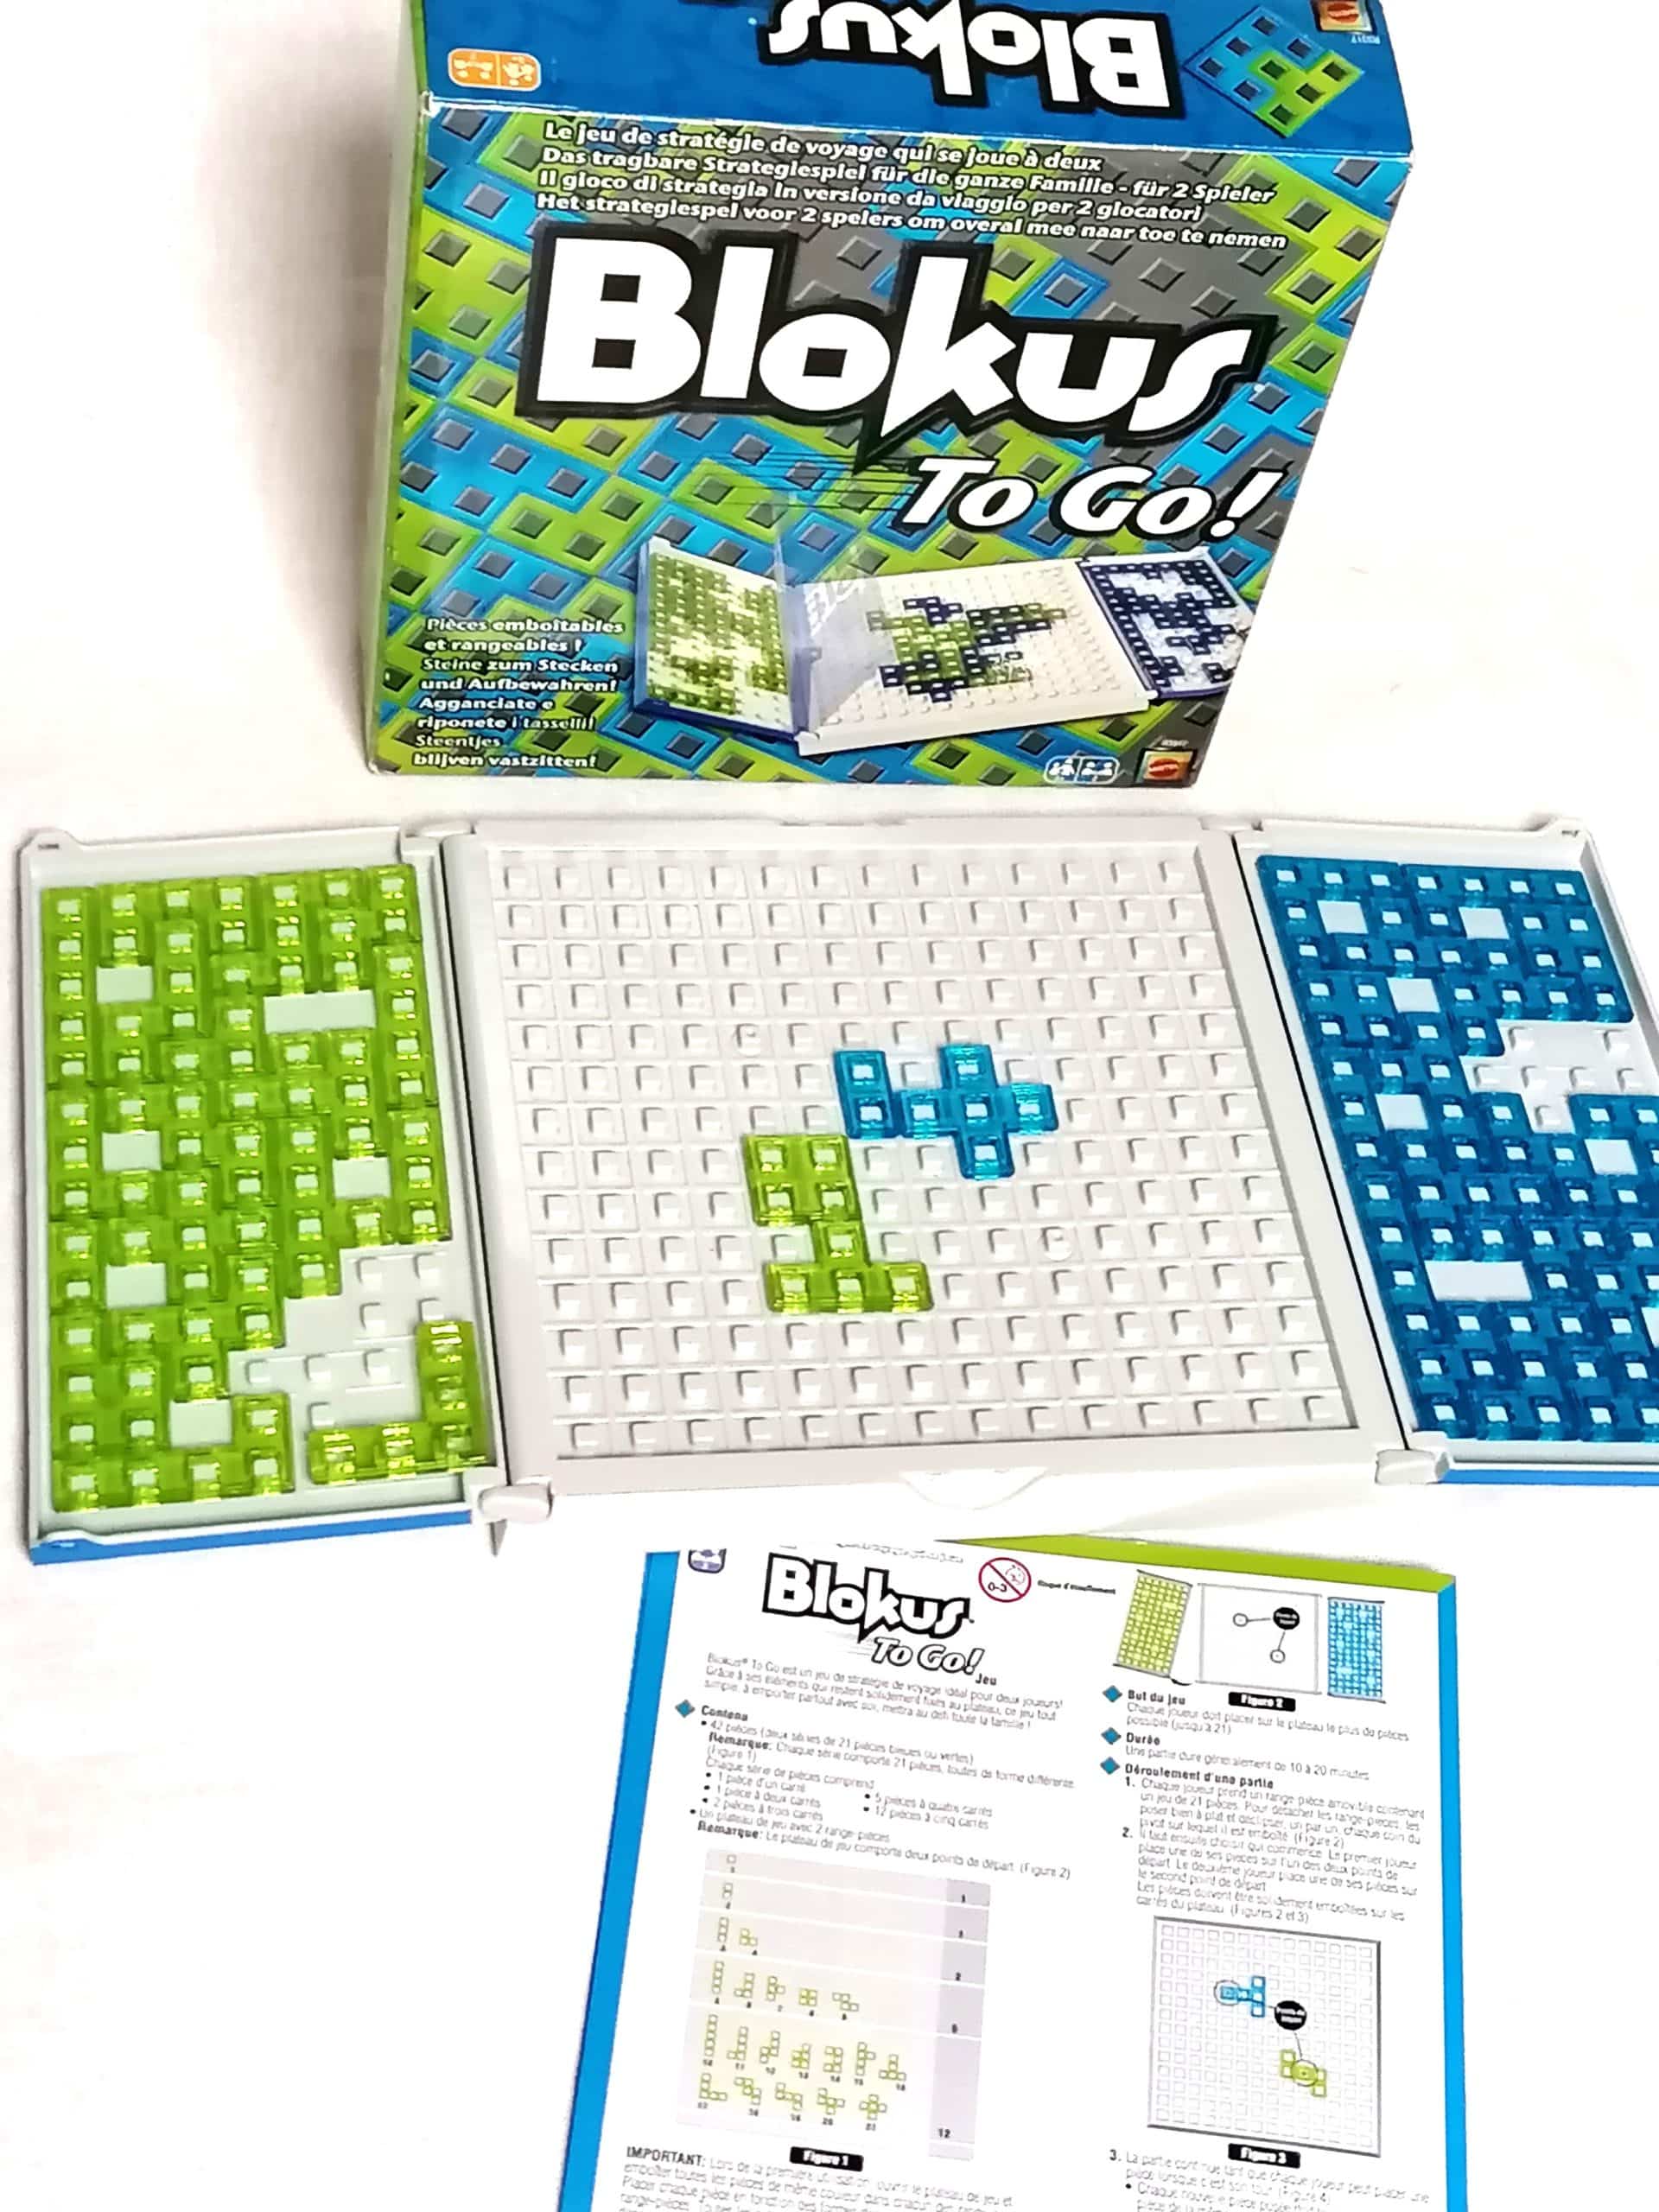 Blokus - Acheter le jeu de société